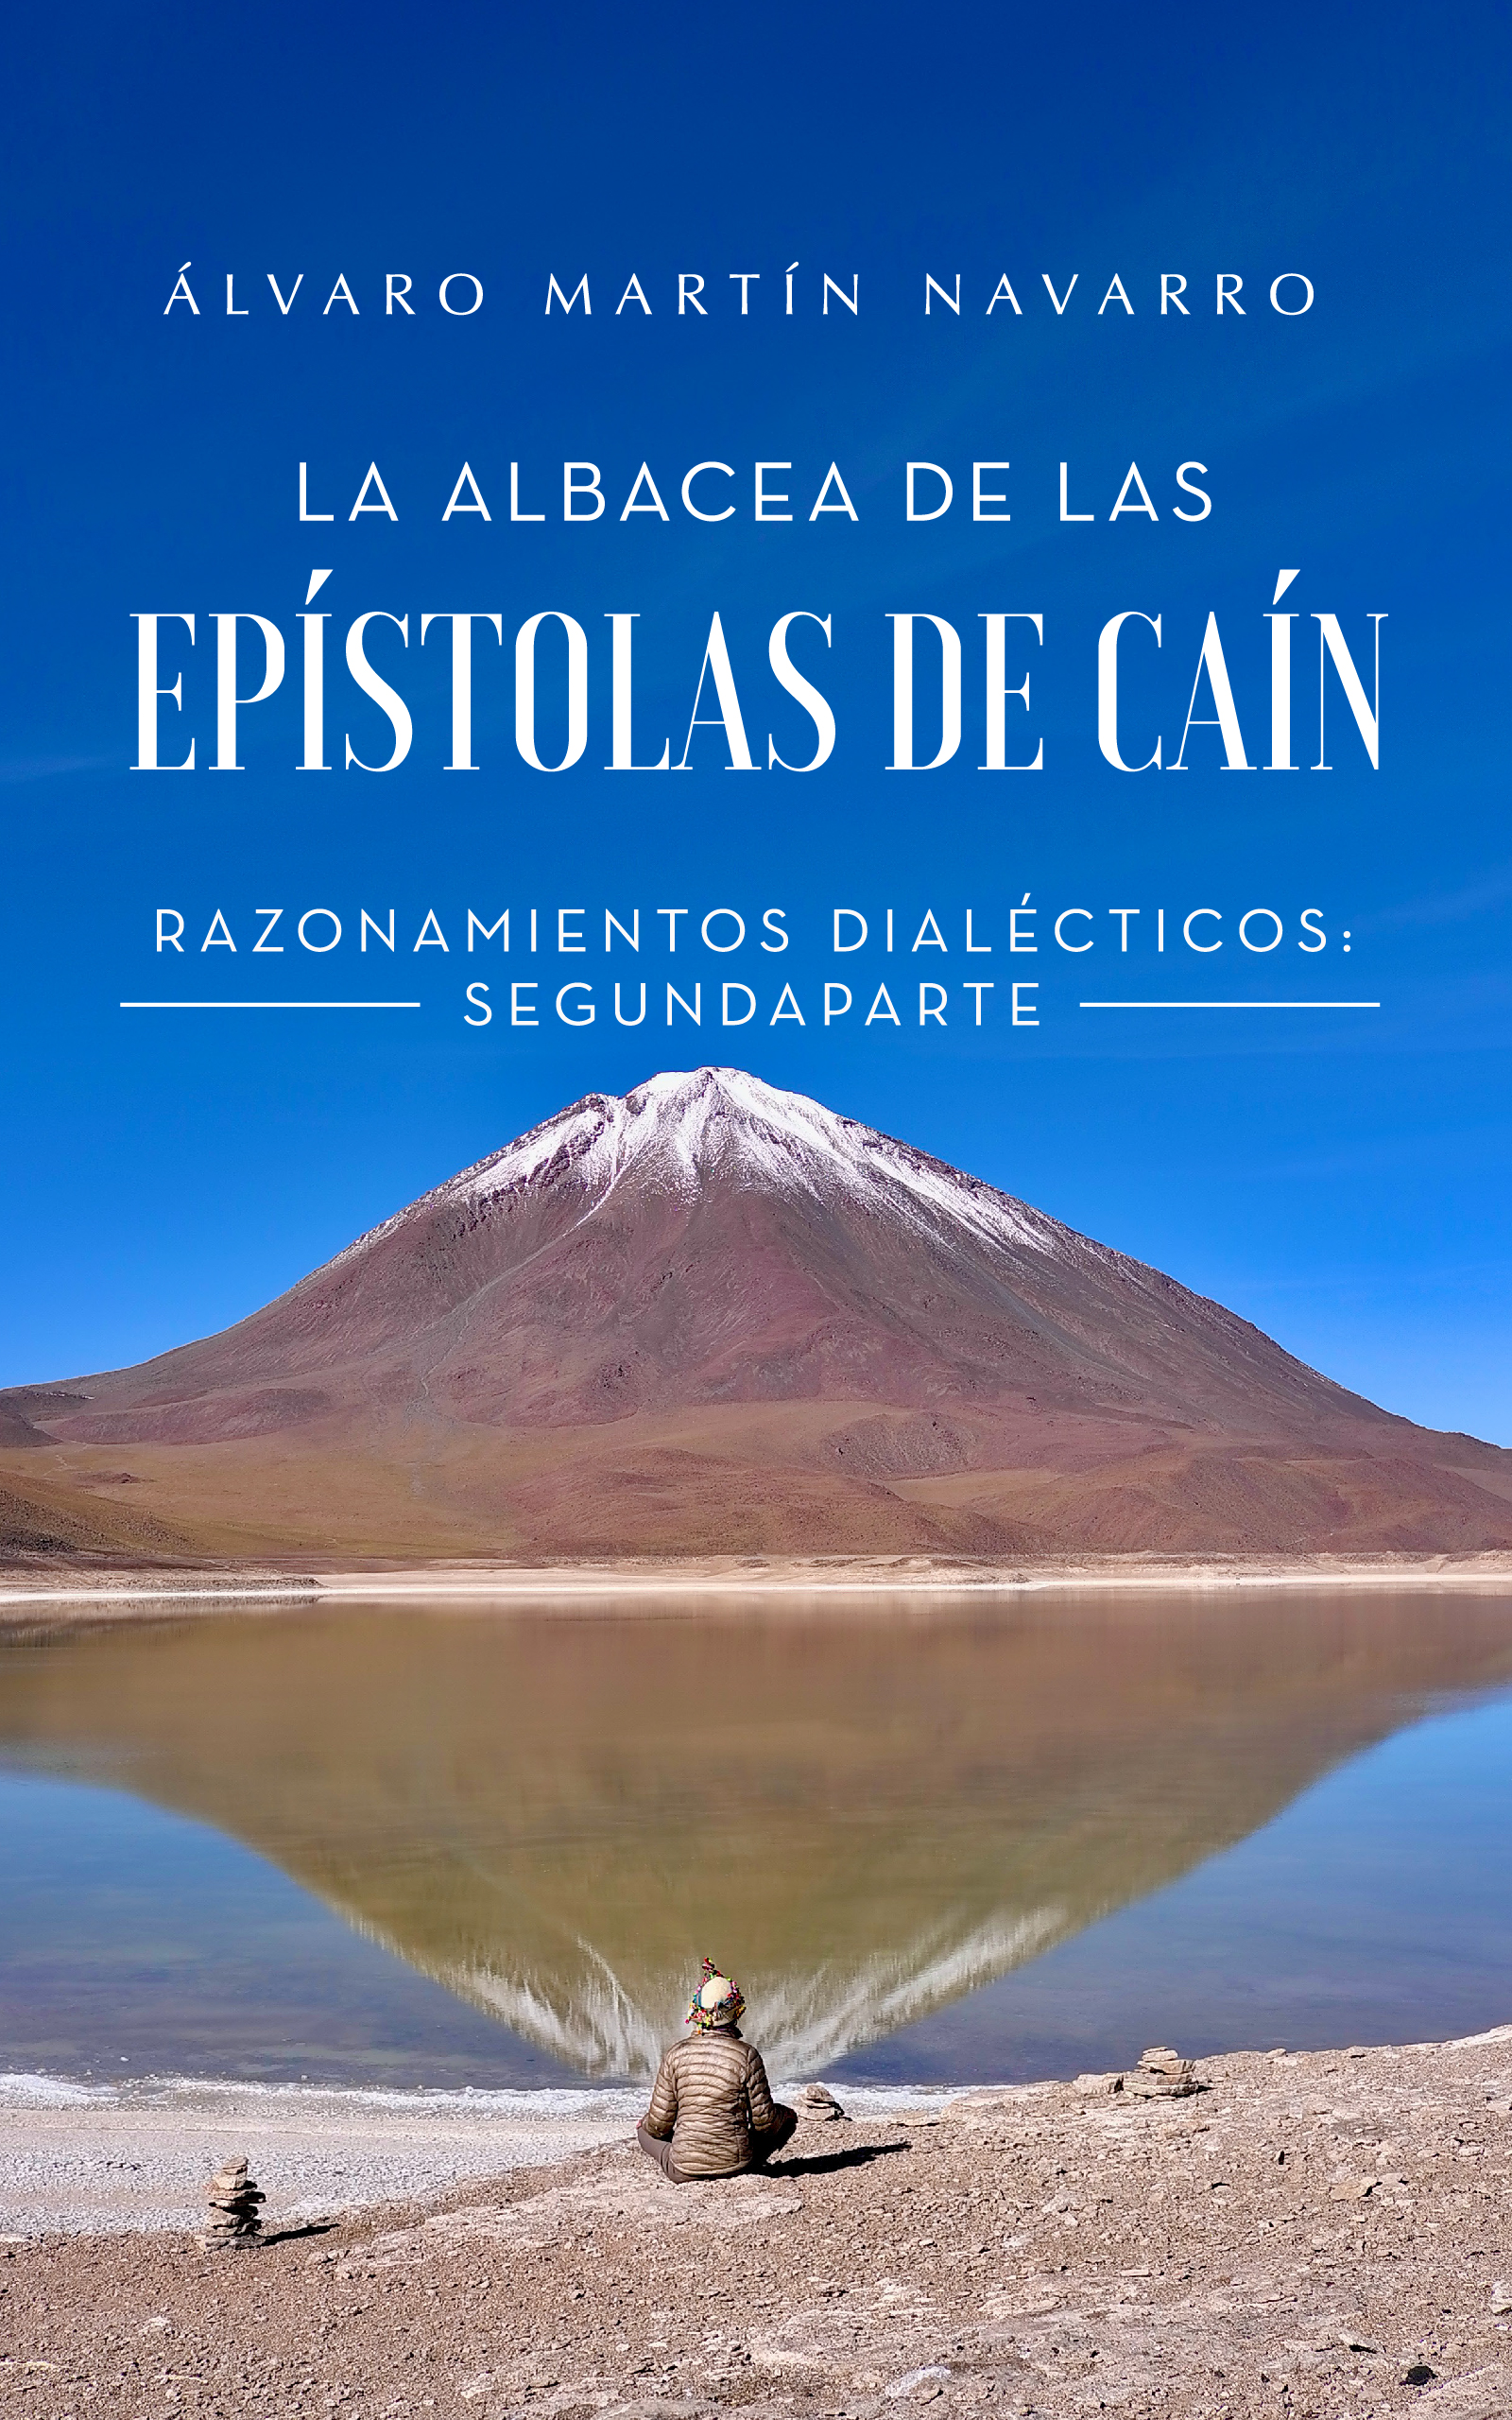 La albacea de las epístolas de Caín, de Álvaro Martín Navarro